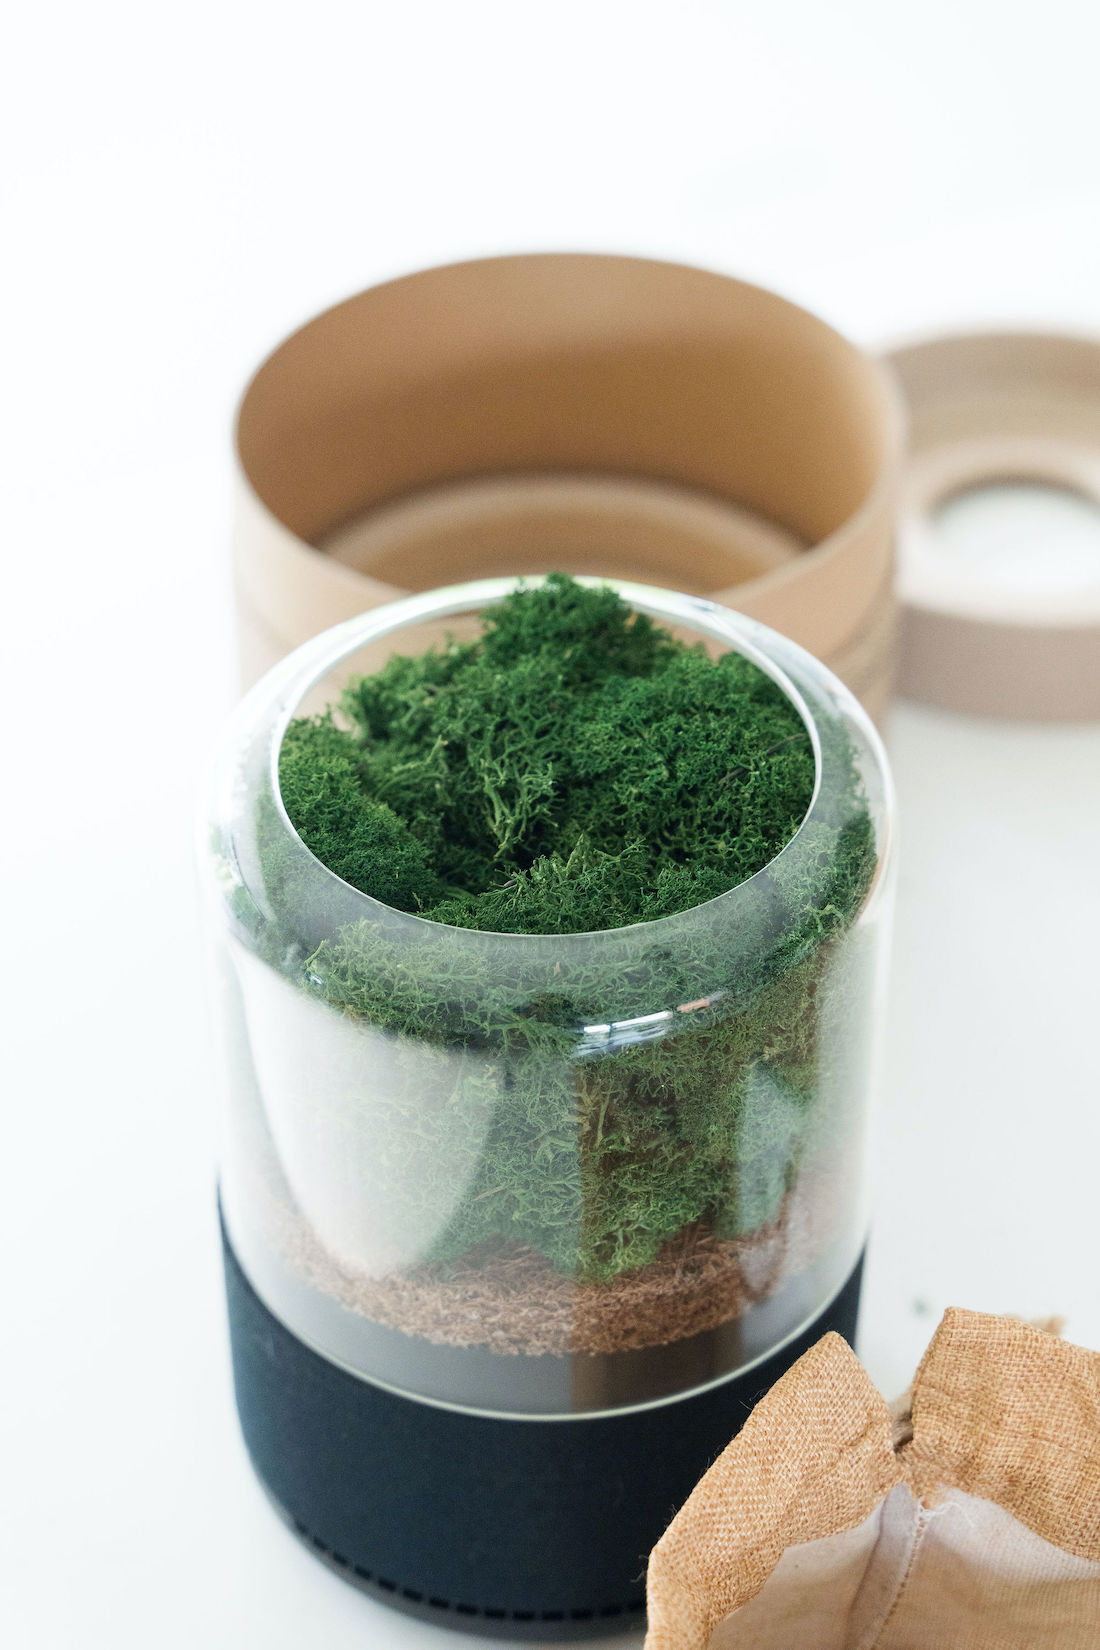 Cool green moss air filter